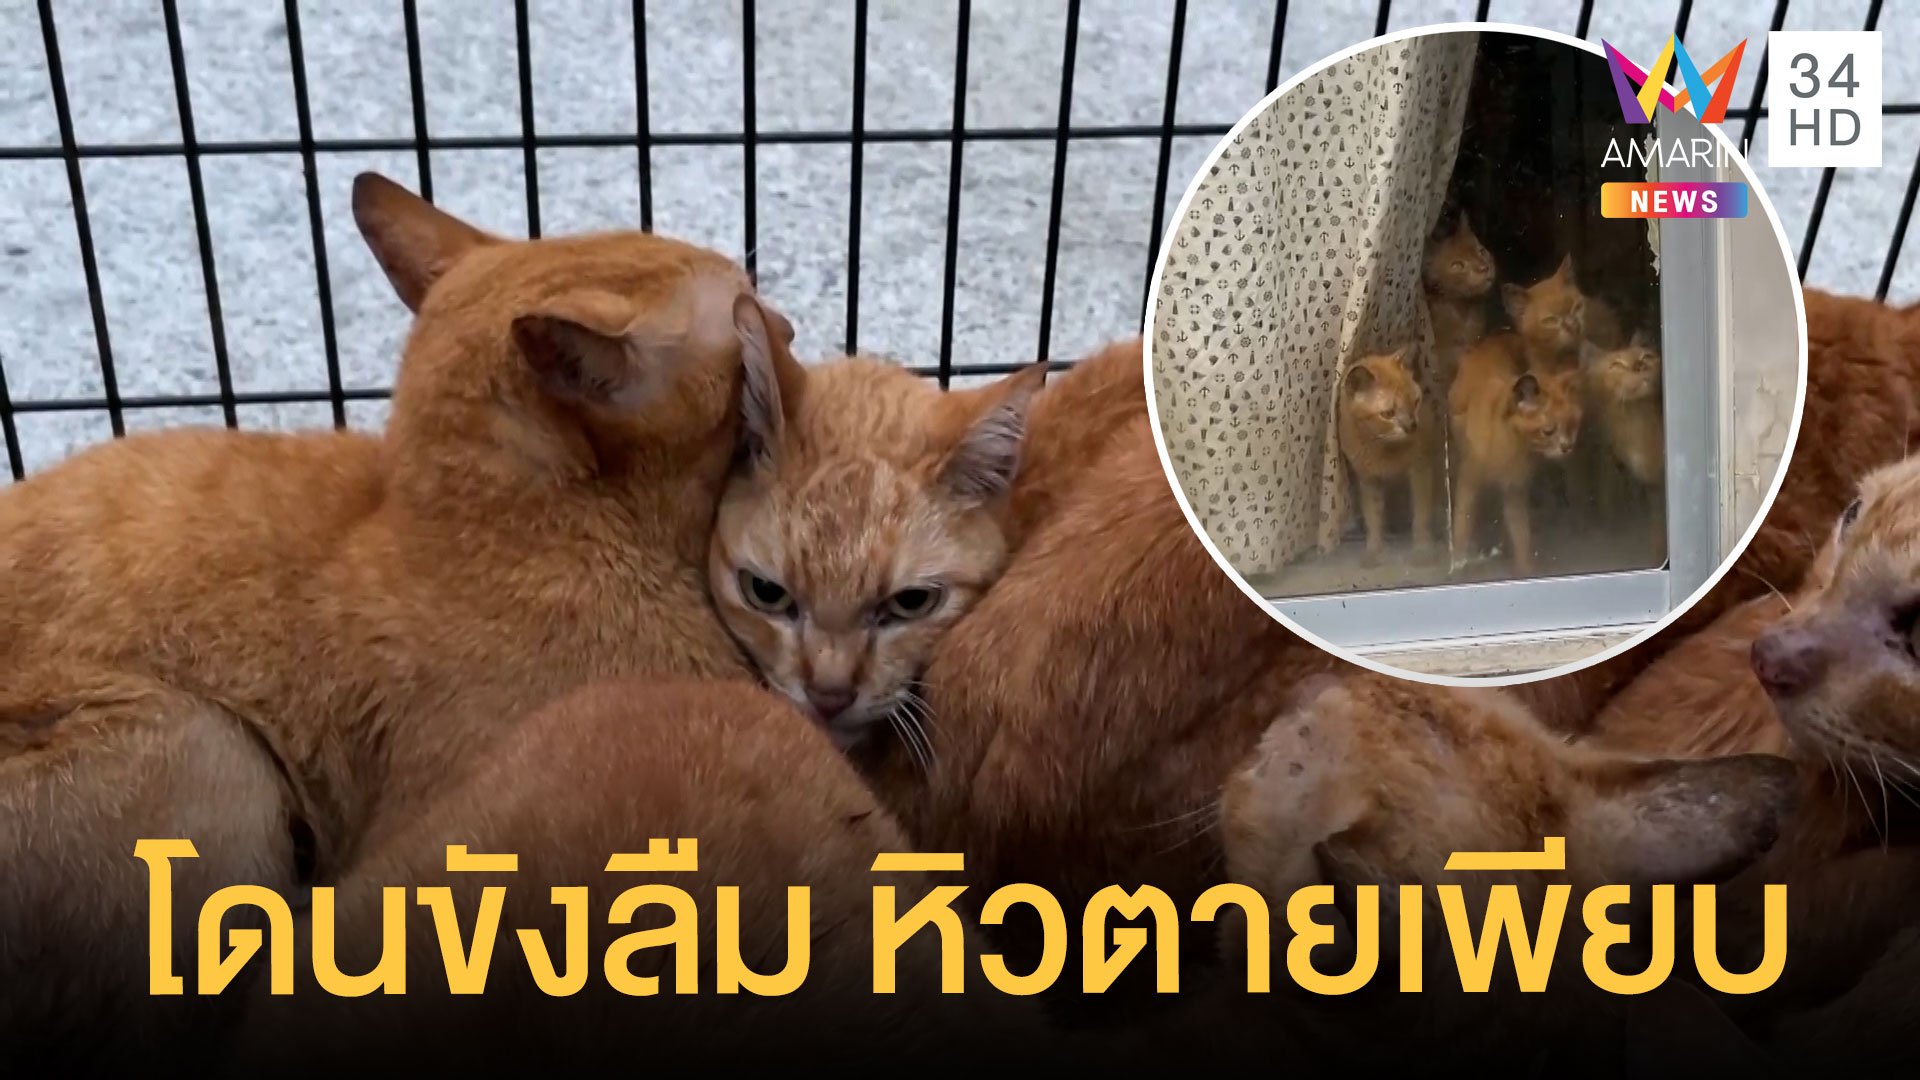 สุดเวทนา แมวส้ม โดนขังลืมในบ้านกว่า 20 ตัว WDT รุดช่วย ผงะเจอซากแมวหิวตาย | ข่าวอรุณอมรินทร์ | 22 มี.ค. 65 | AMARIN TVHD34